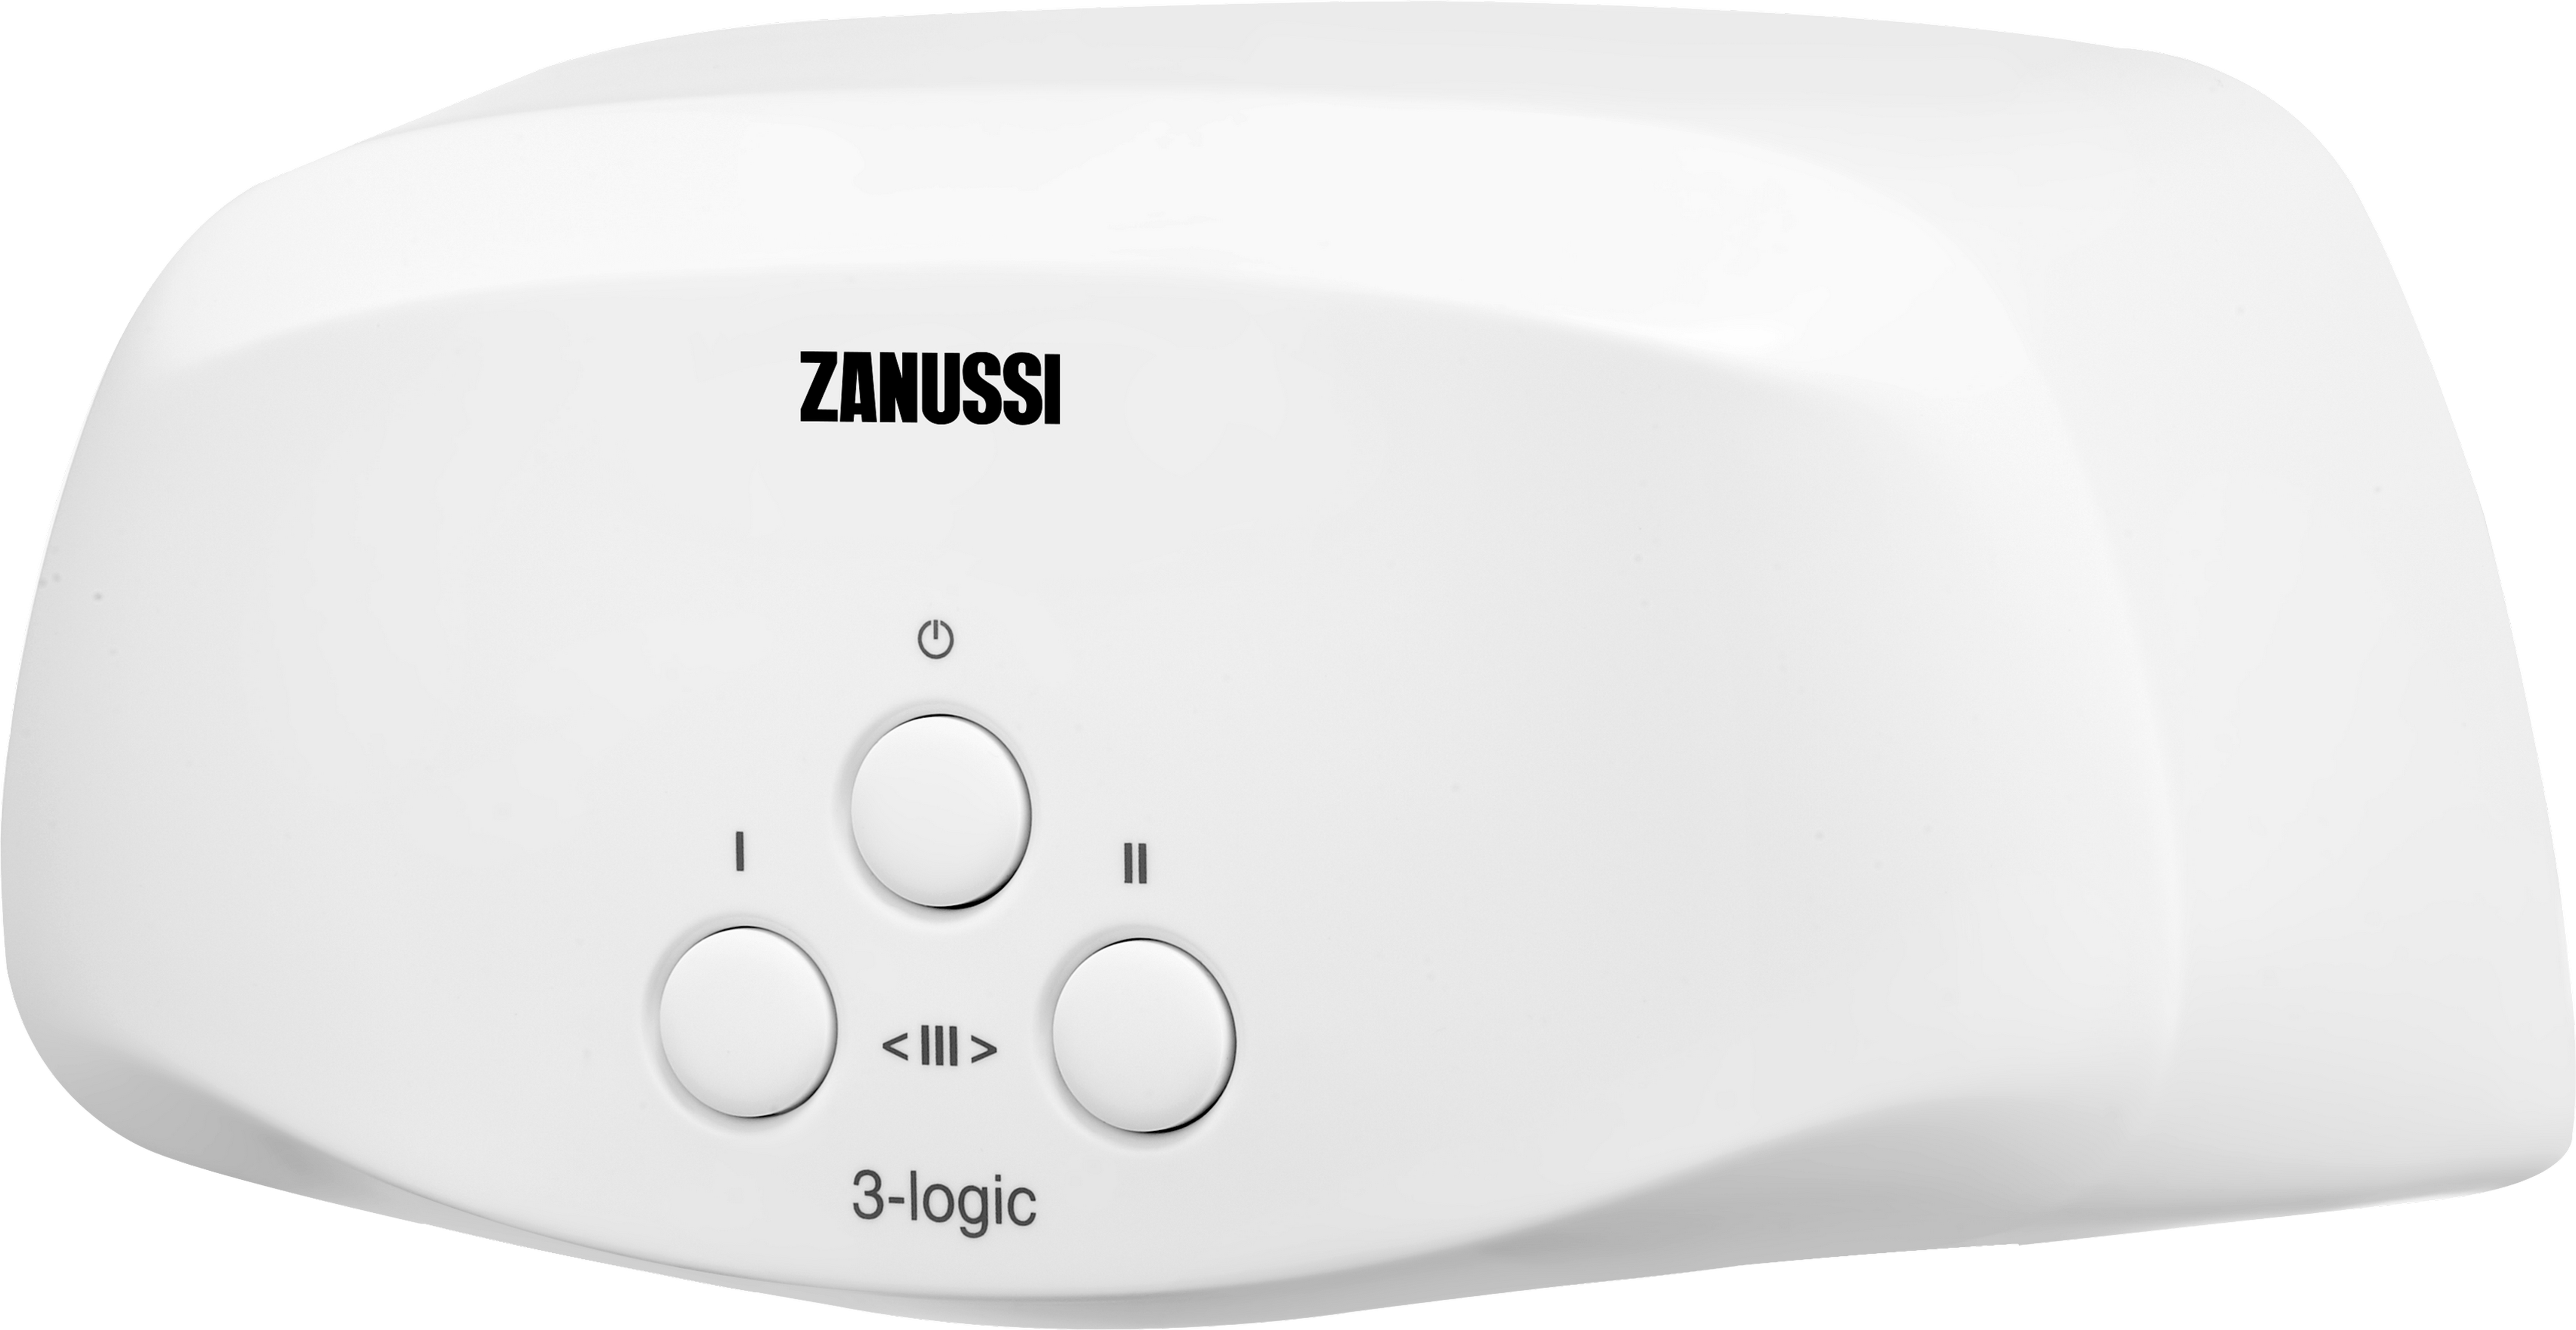 Проточный водонагреватель Zanussi 3-logic S (3,5 кВт) цена 0.00 грн - фотография 2